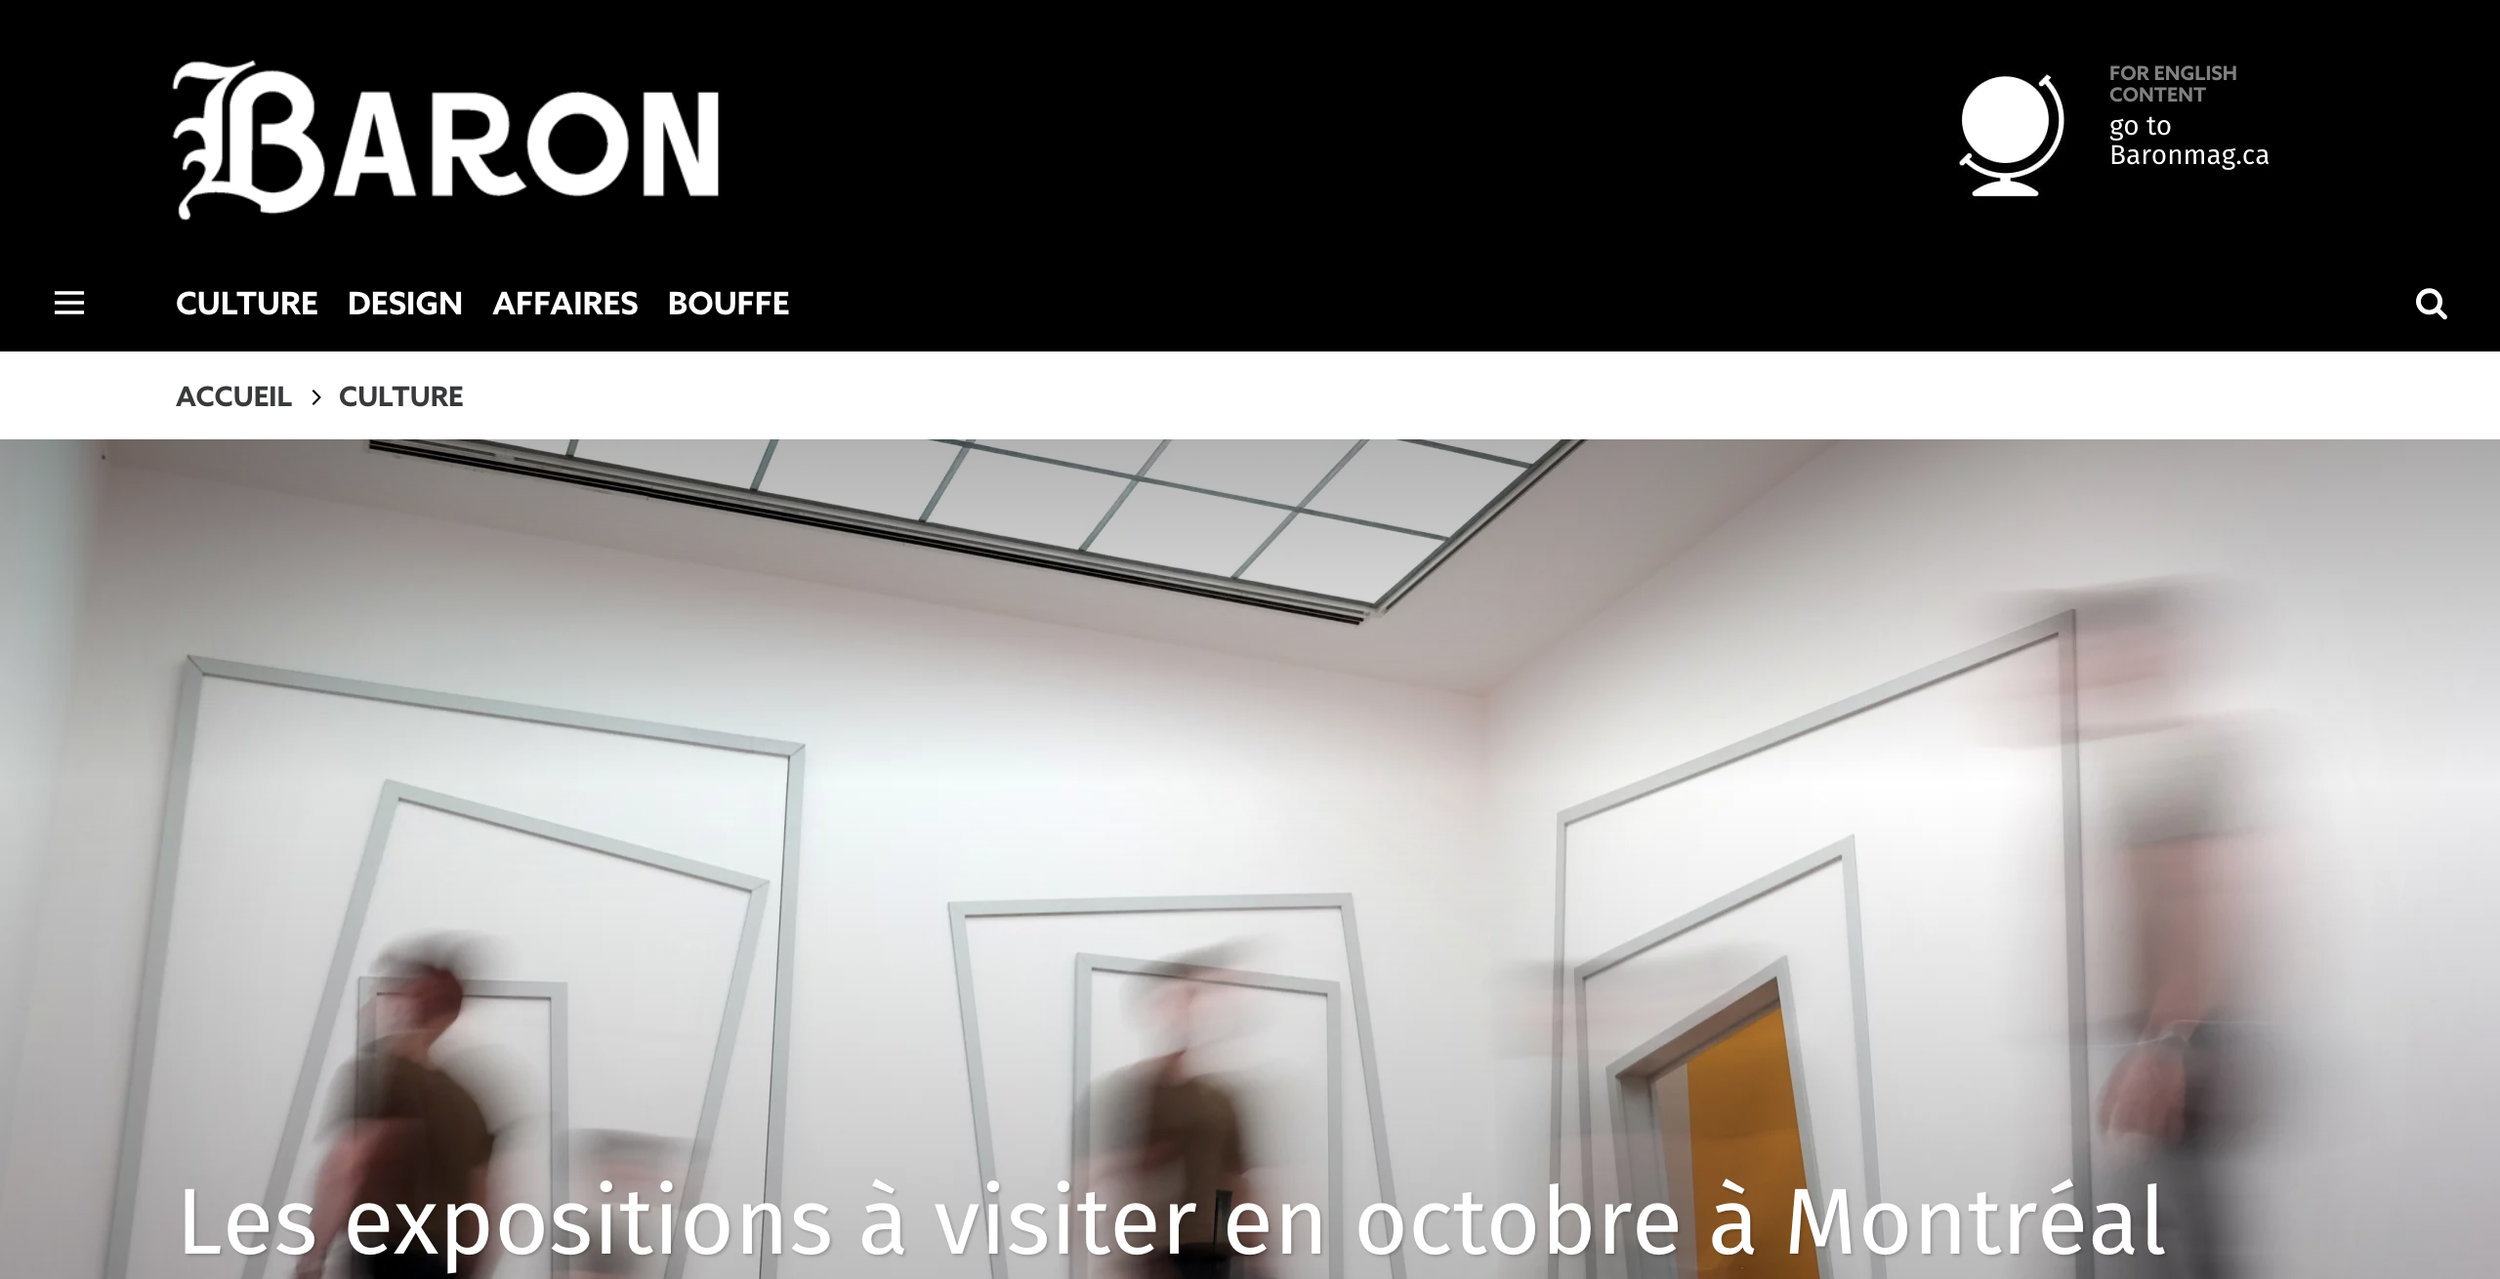  Les expositions à visiter en octobre à Montréal. Beha Claire-Marine.  Baron Mag , 1er octobre 2018.  L'article intégral  ici.  